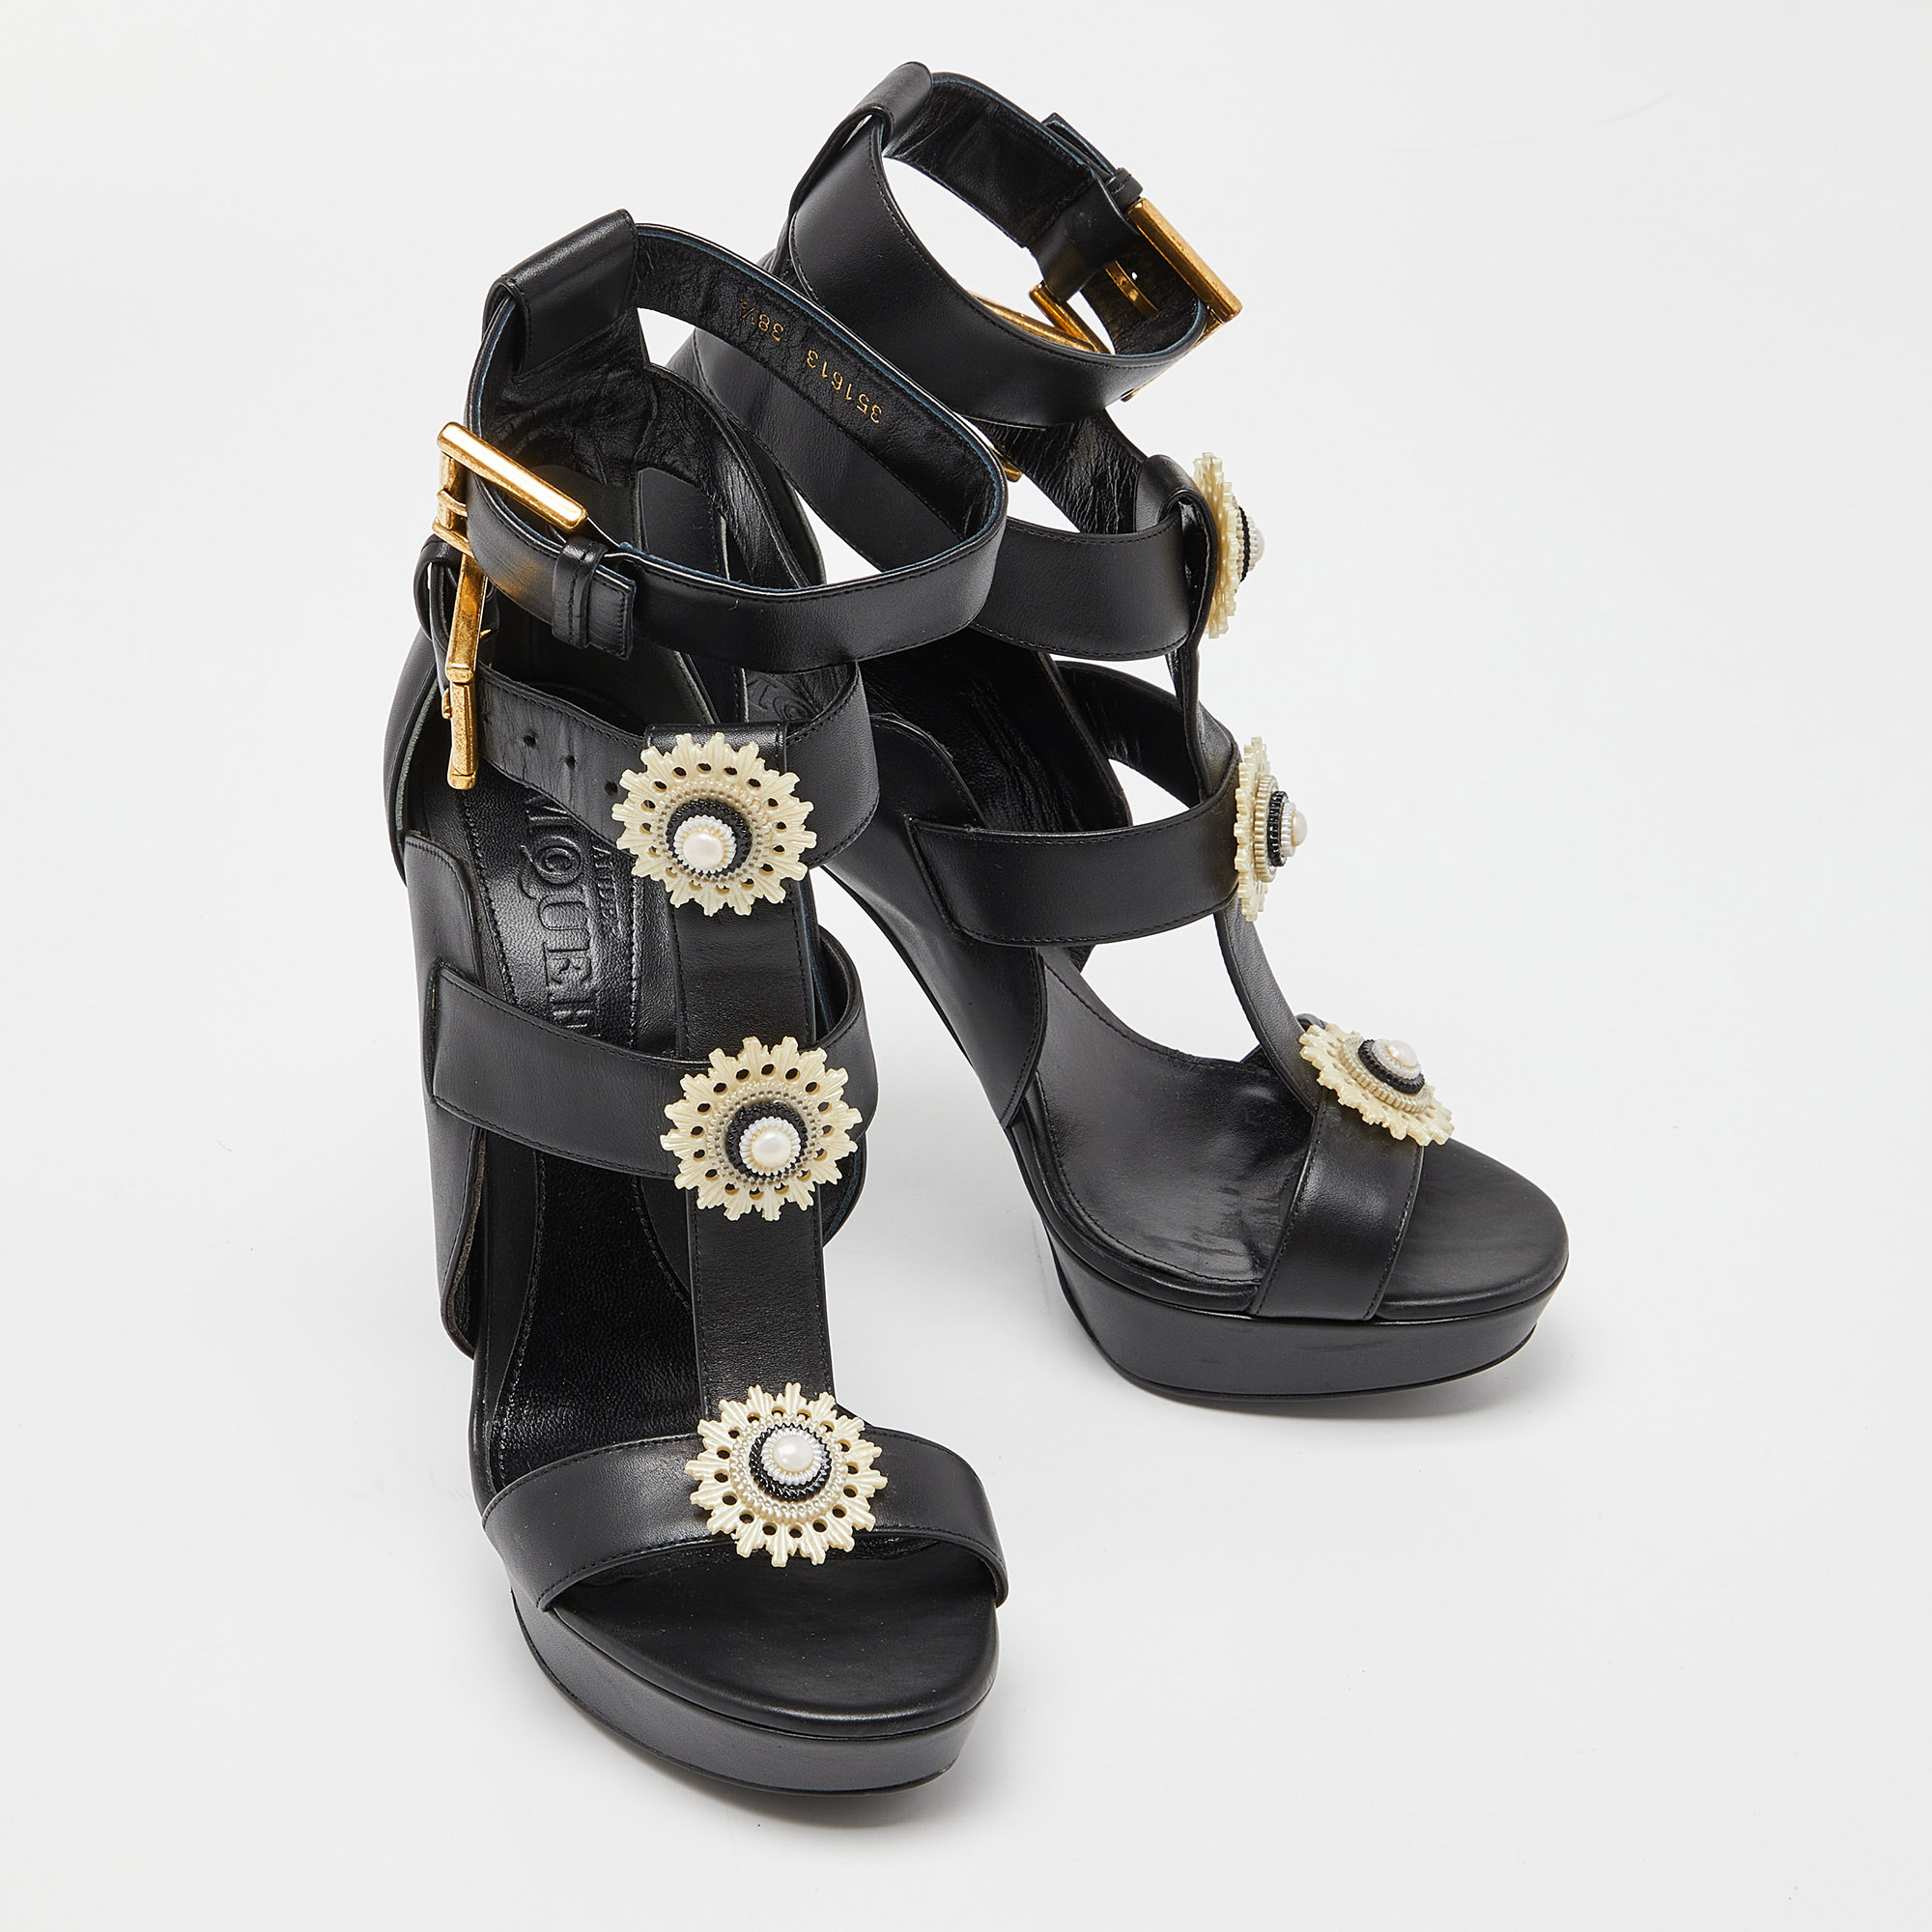 Alexander McQueen Black Leather Strappy Platform Sandals Size 38.5